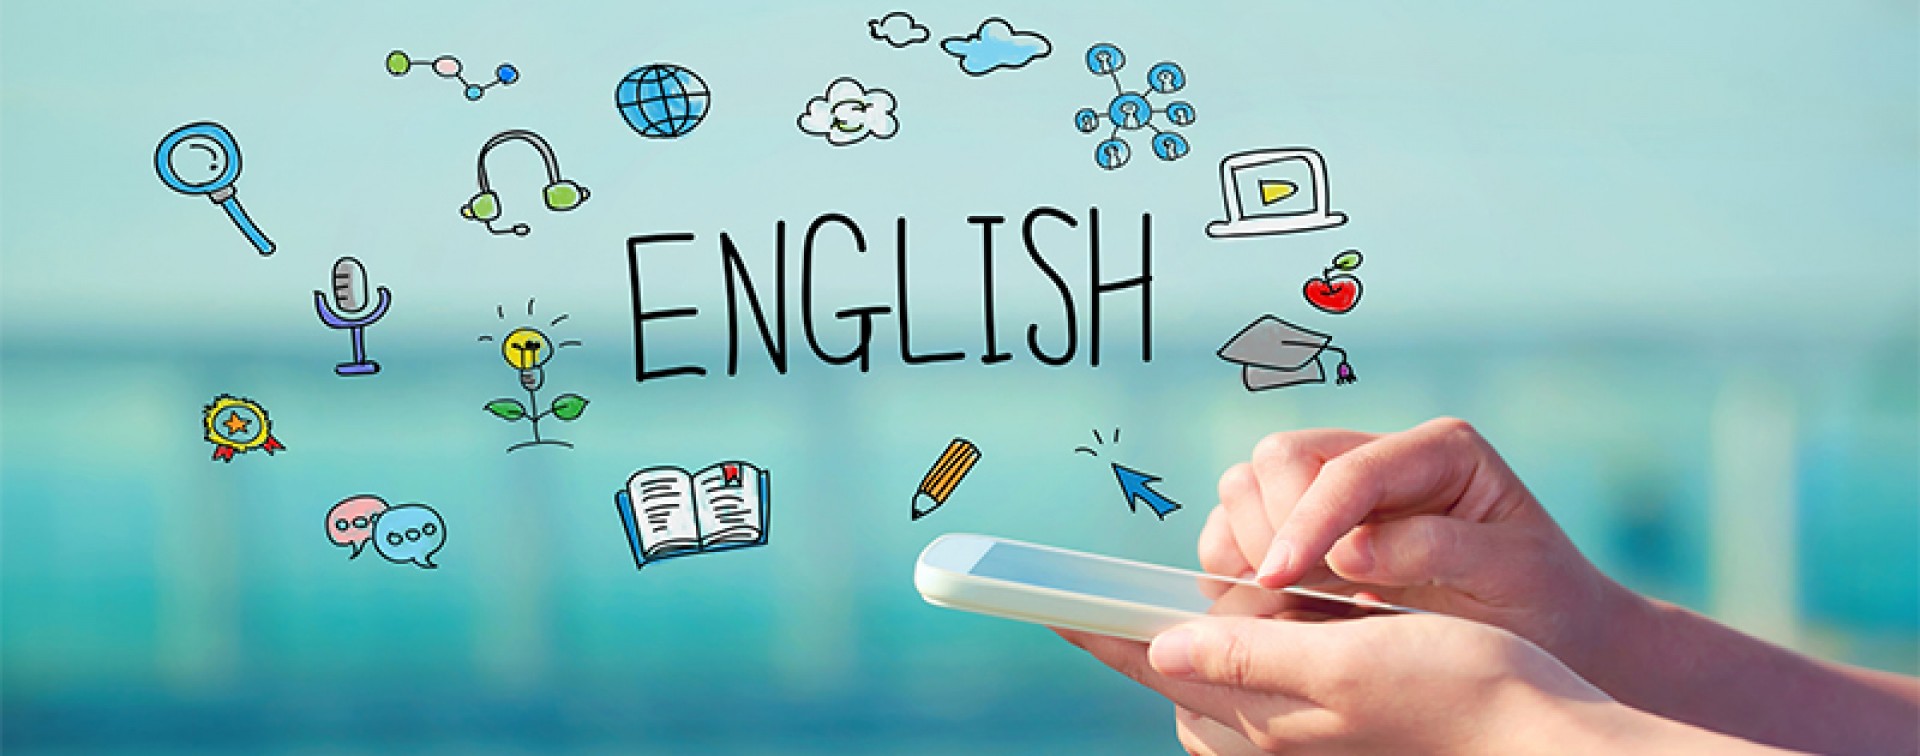 Có thể bạn chưa biết: tự học tiếng Anh online hiệu quả bất ngờ qua website